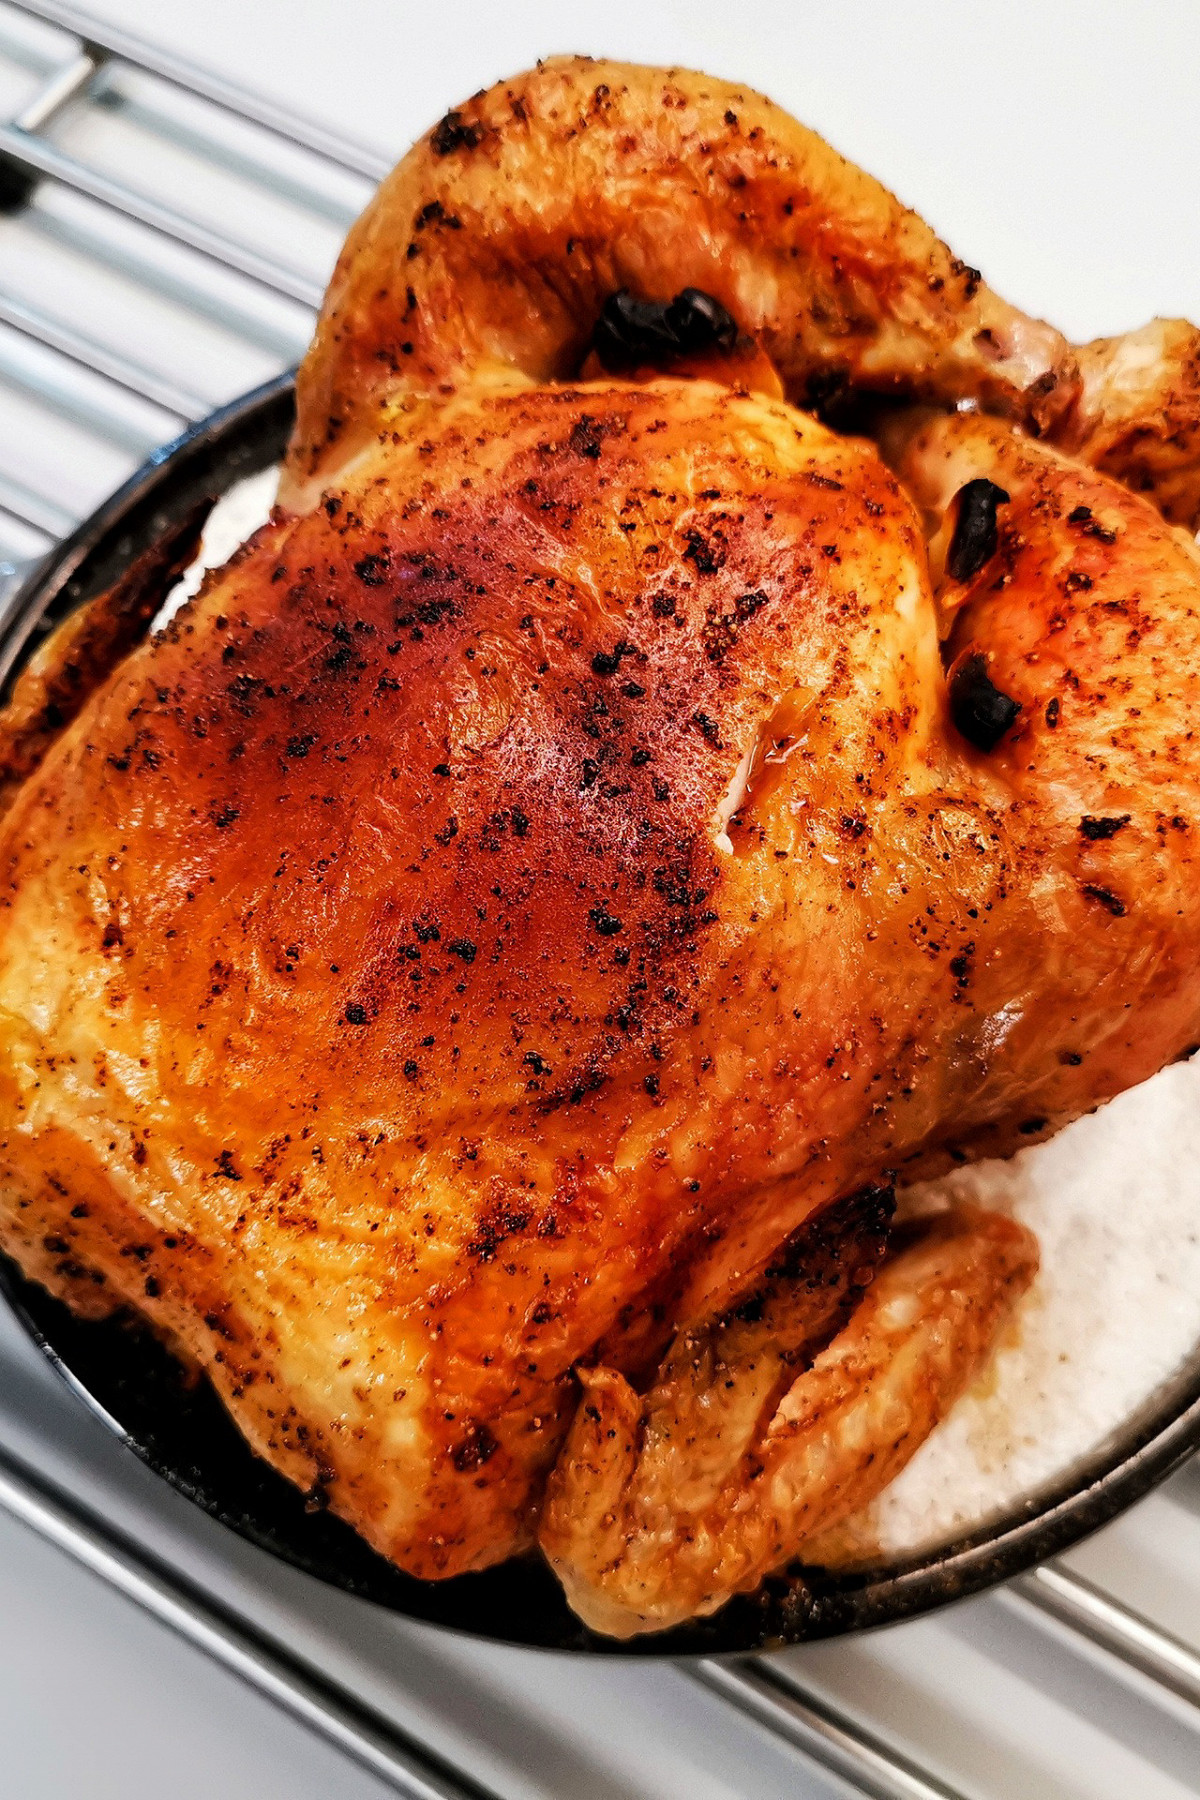 Видео-рецепт курицы на соли в духовке целиком с хрустящей корочкой